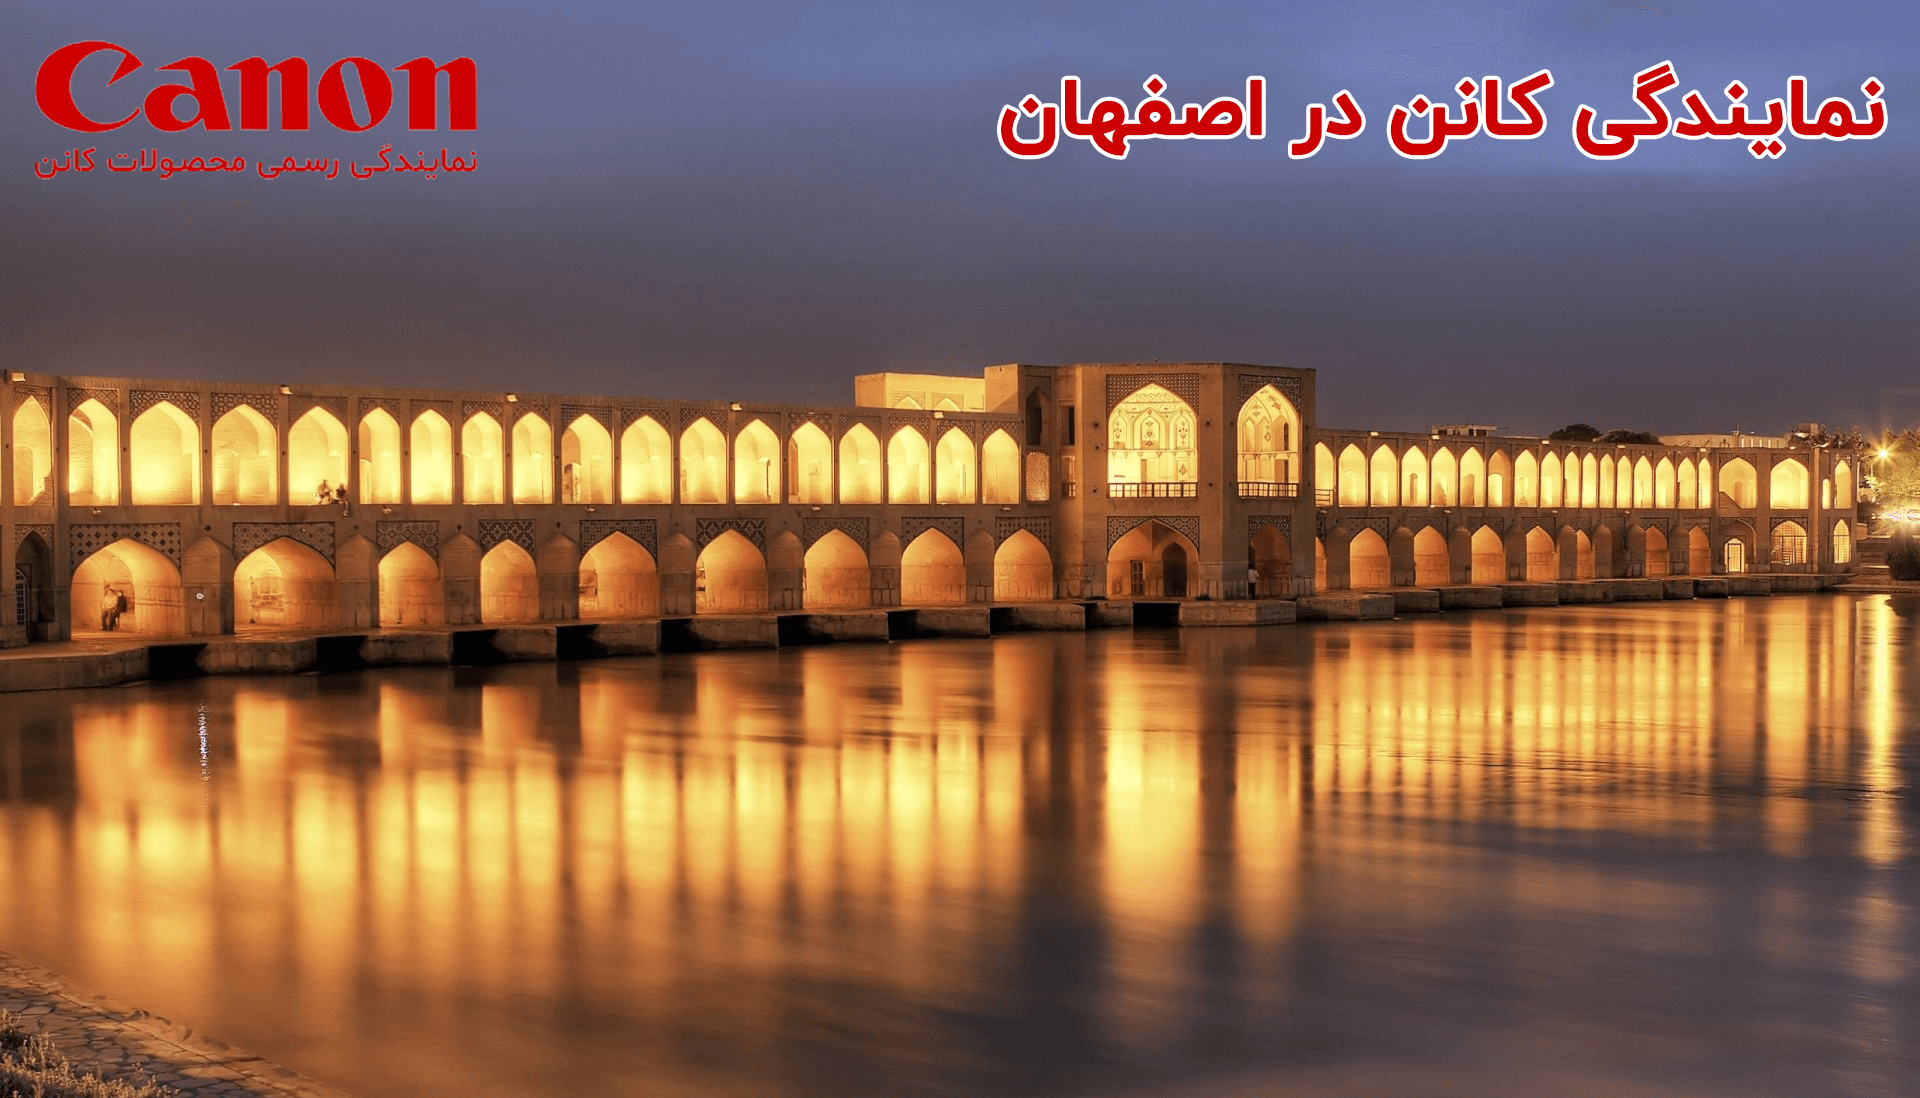 نمایندگی کانن در اصفهان